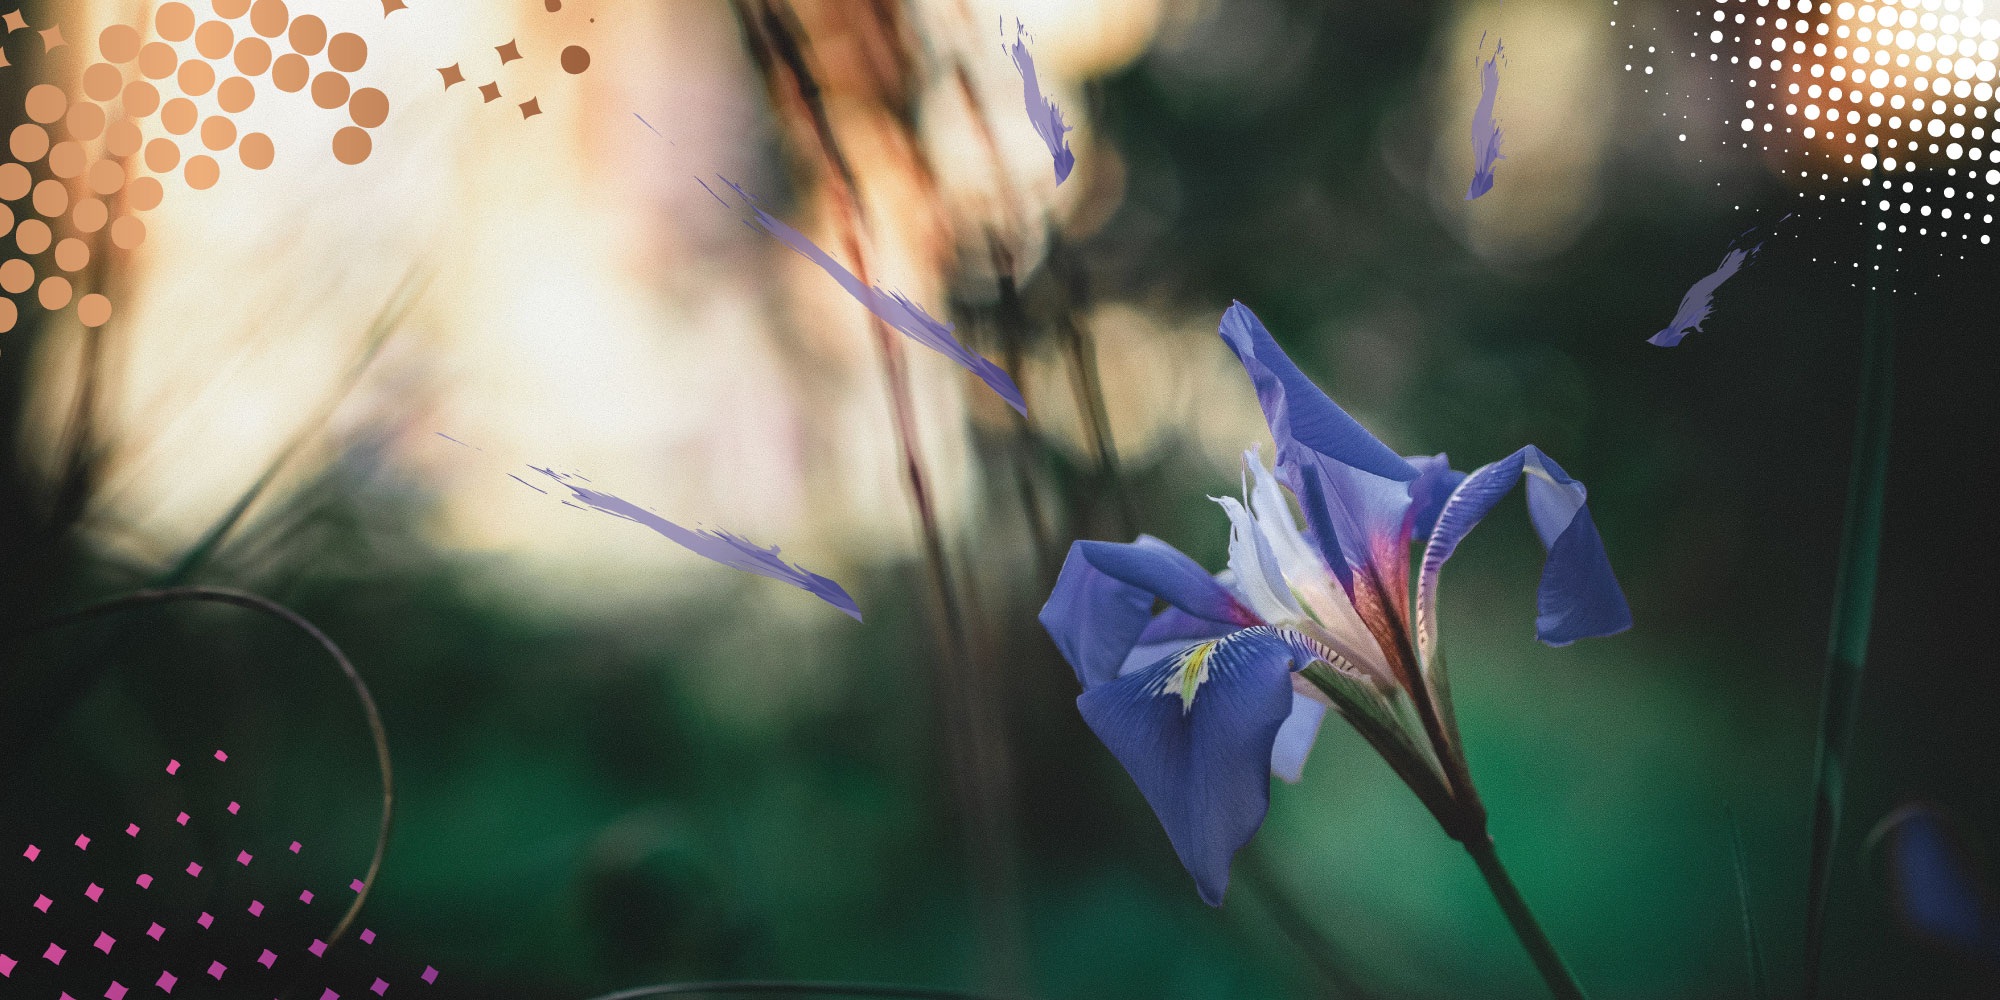 Image of wild iris, purple streaks of paint and halftone overlay. Photo credit: arthur-marshall